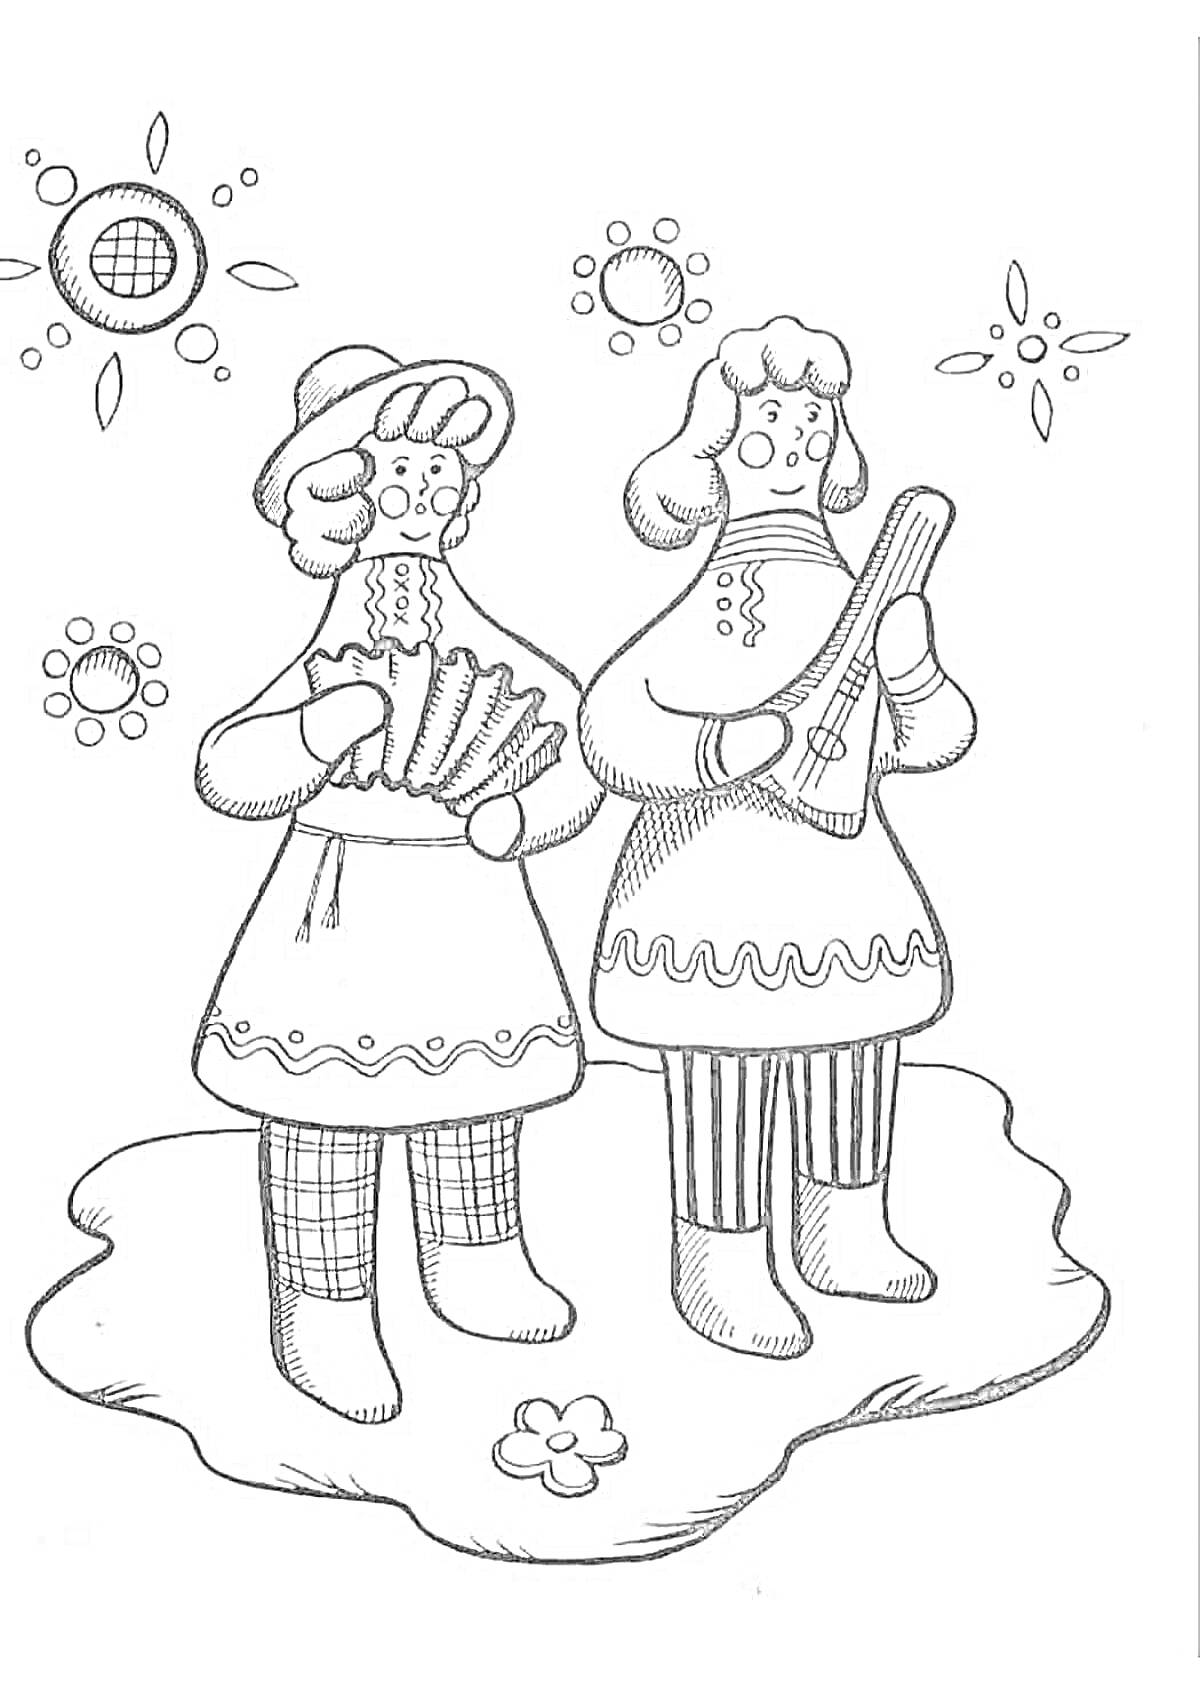 Раскраска Два человека в народных костюмах с музыкальными инструментами на фоне орнамента